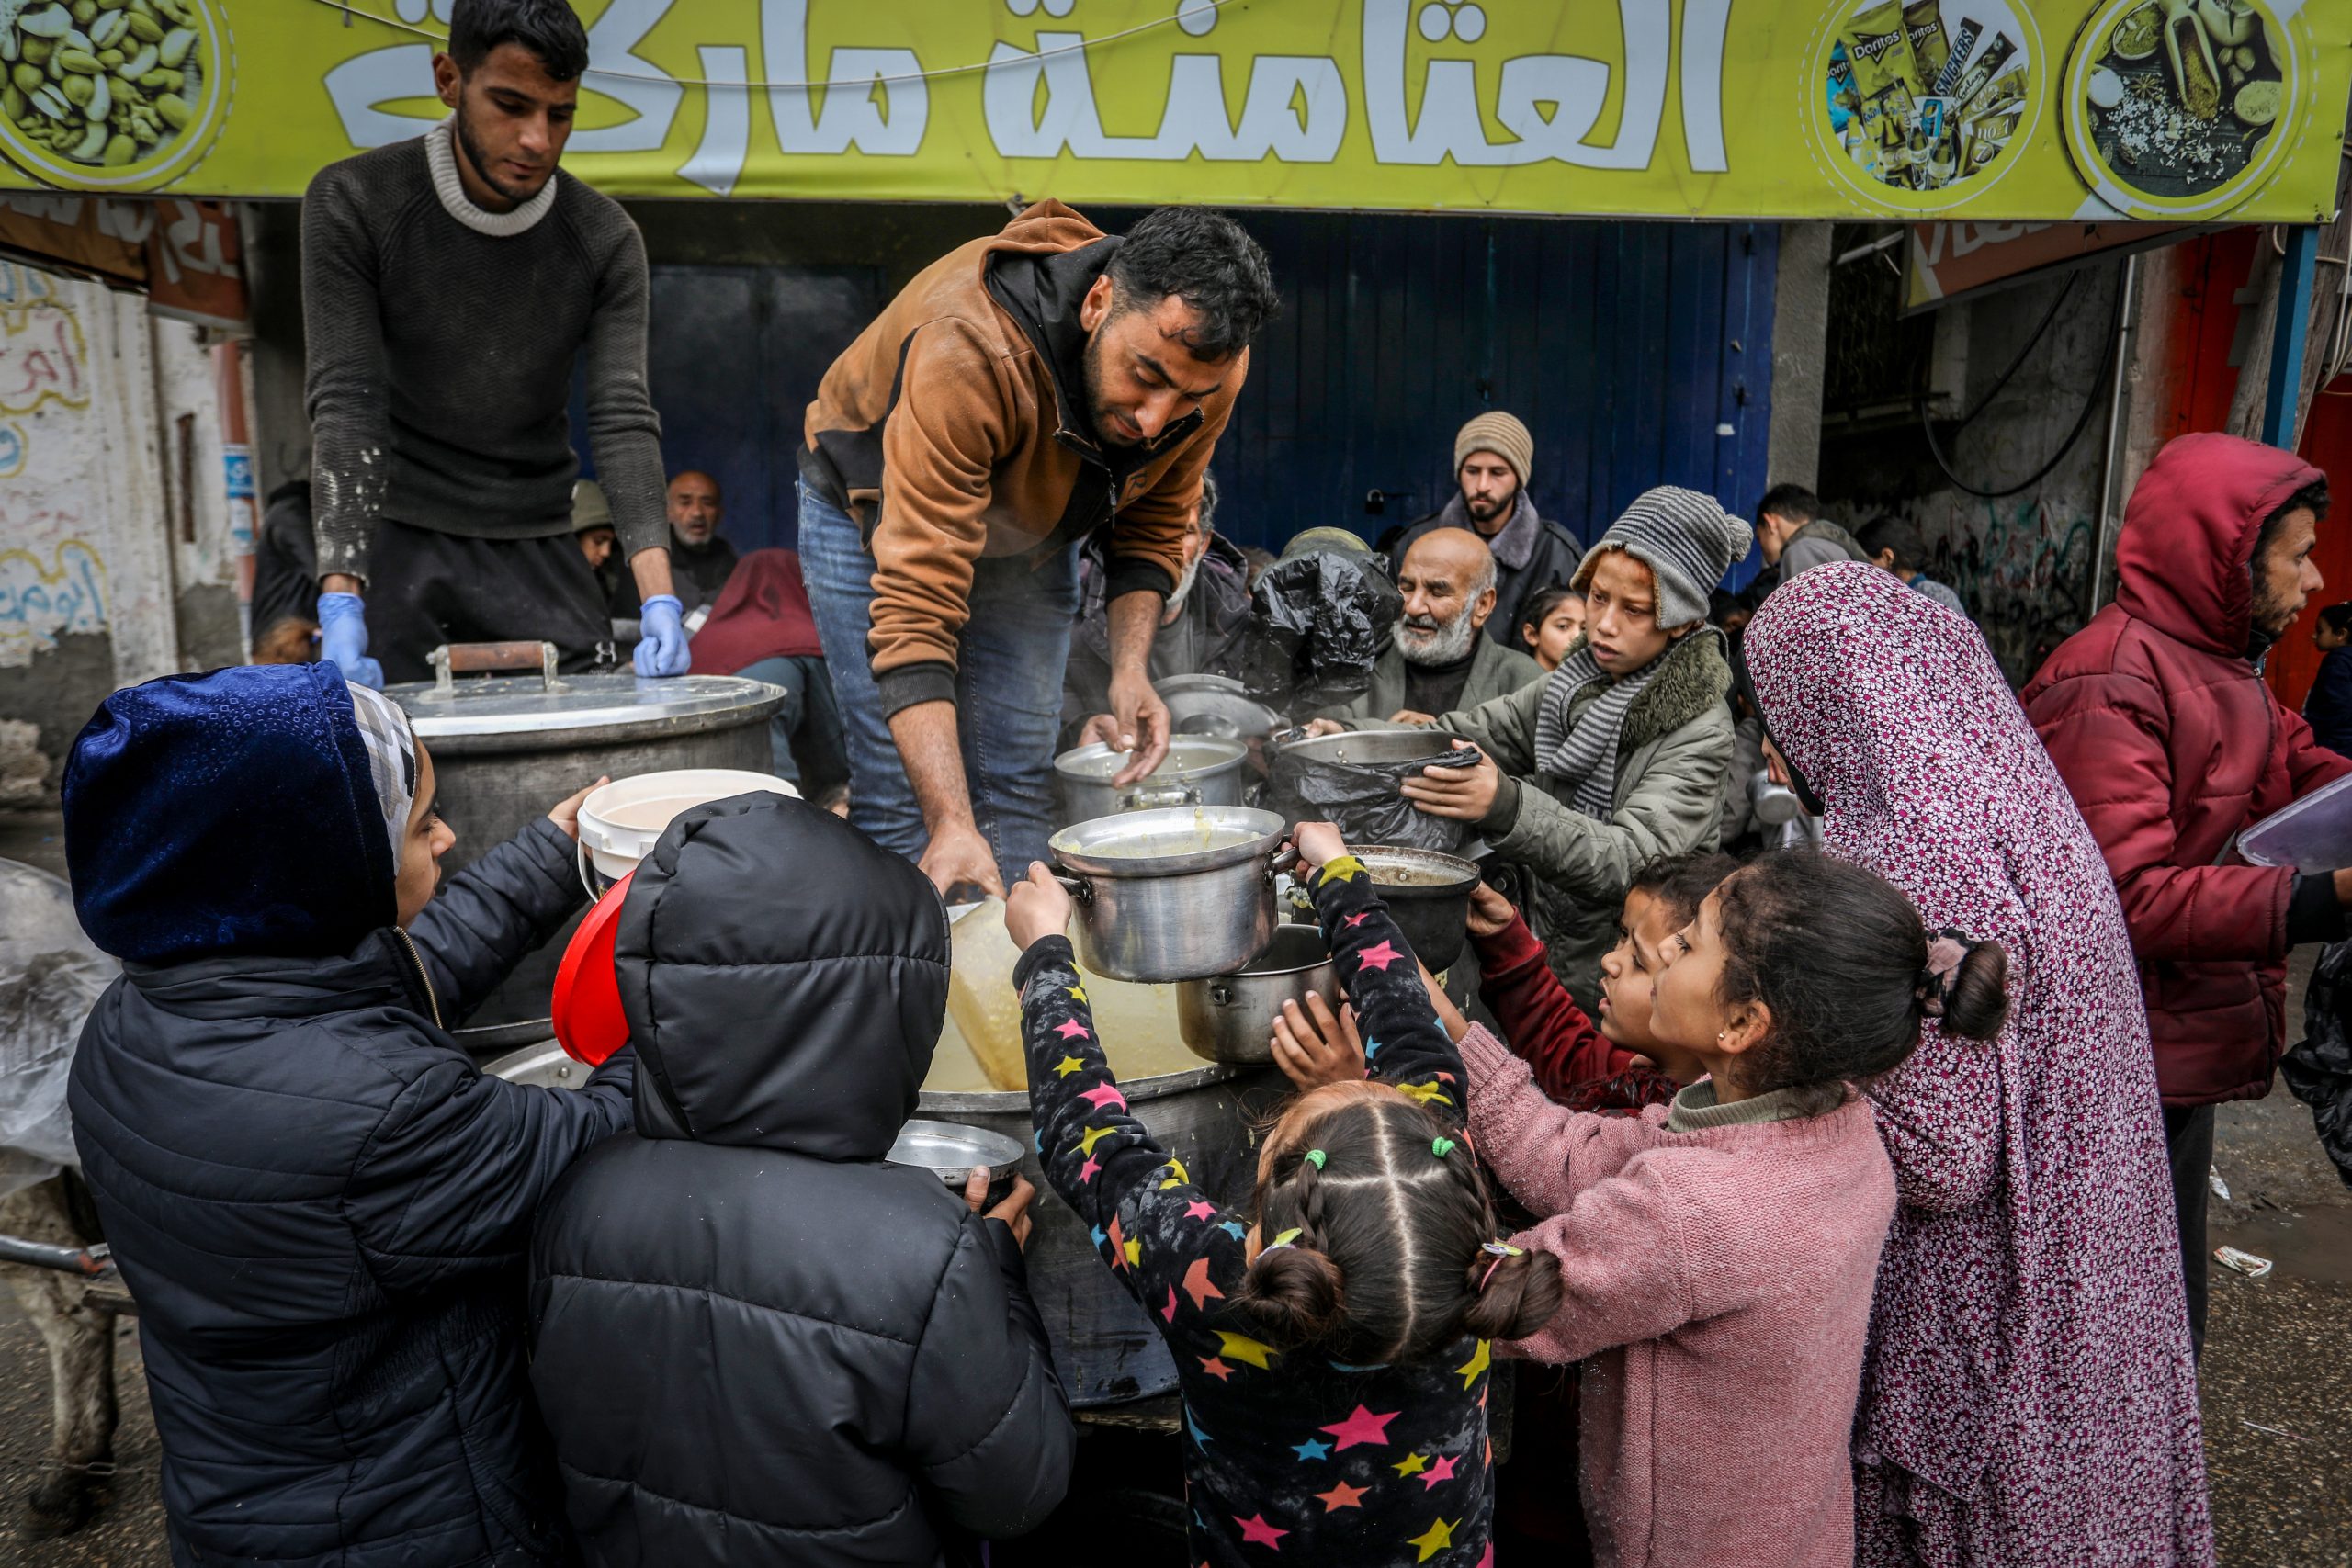 ד"ר דרור אידר: לו יכלו, הפלסטינים היו בוחרים שוב בטבח על אף ההשלכות הכבדות